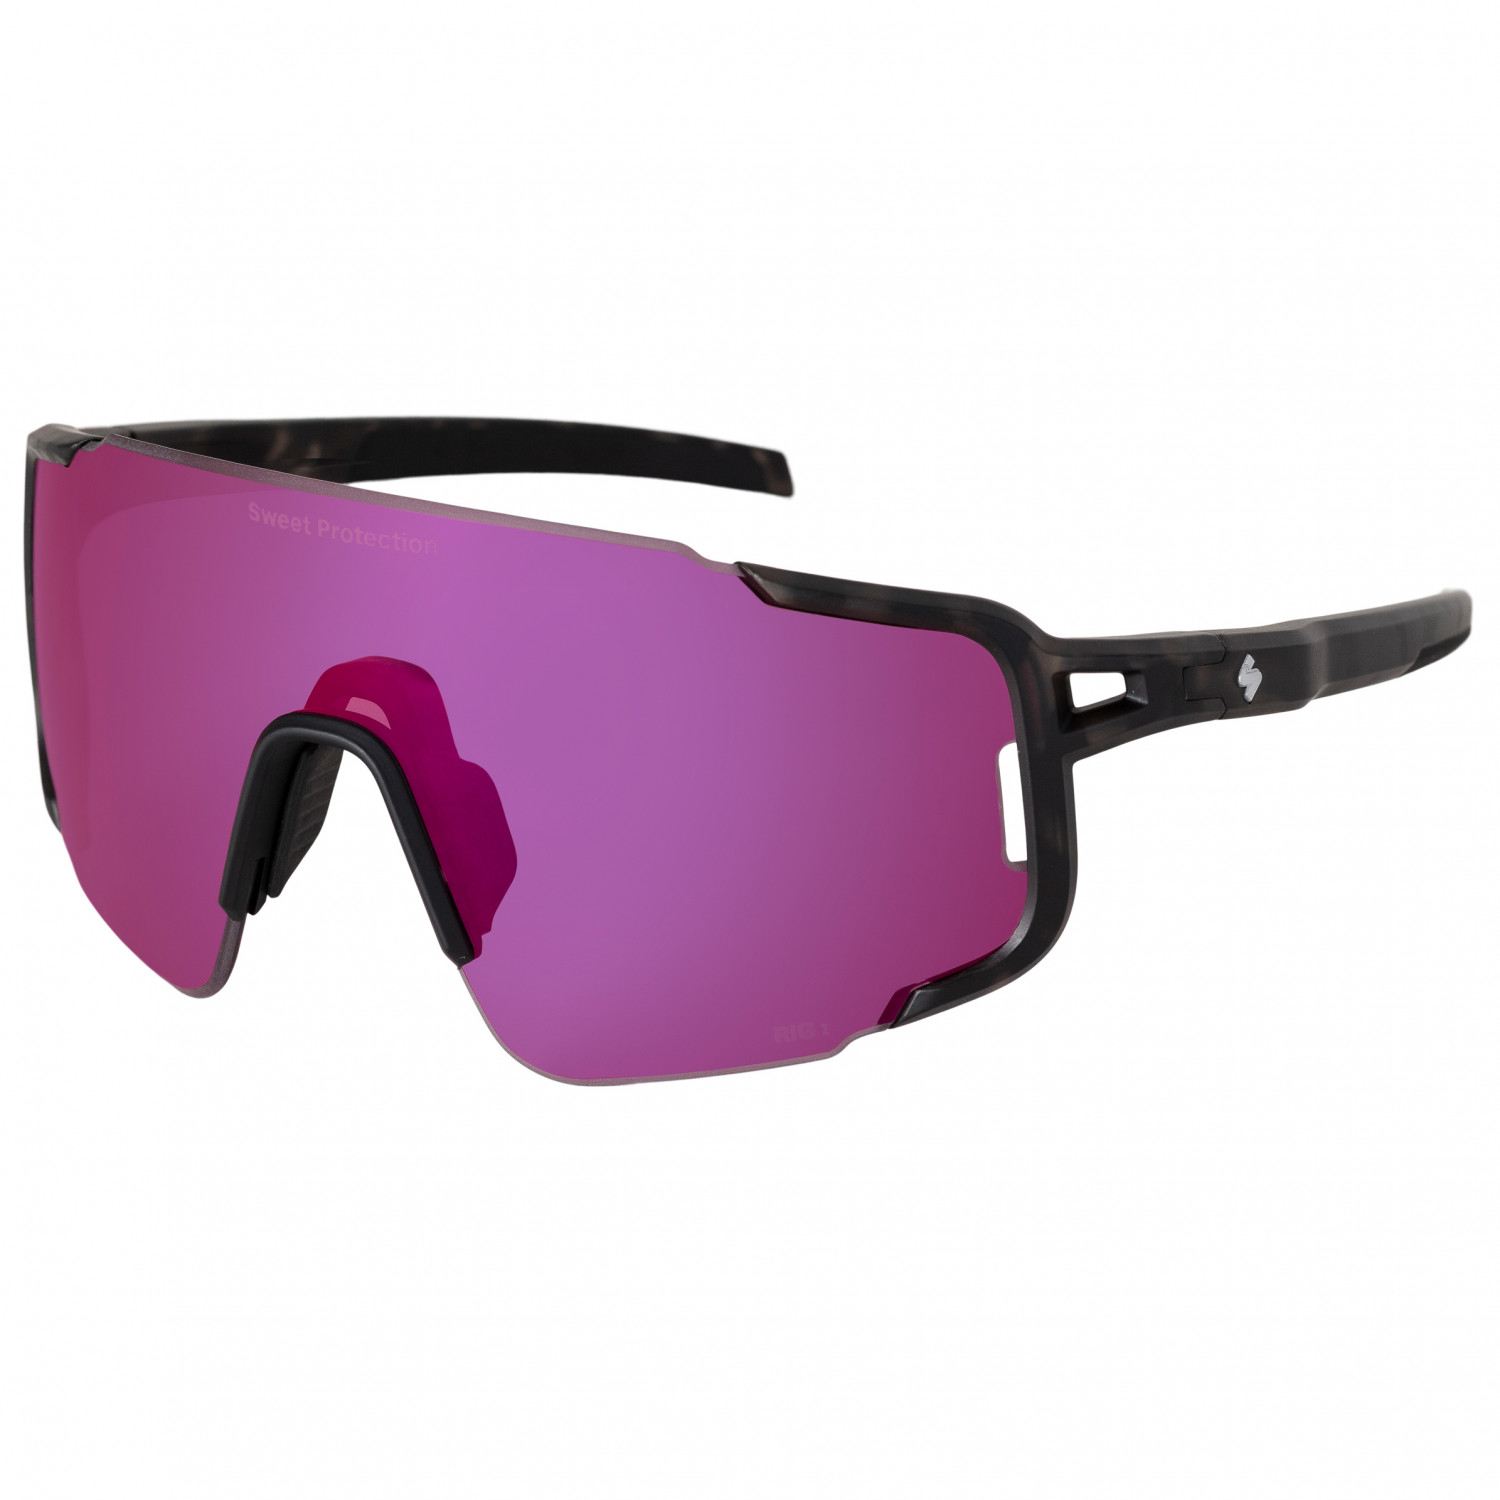 Велосипедные очки Sweet Protection Ronin Max RIG Reflect S2 (VLT 25%), матовый кристально черный камуфляж